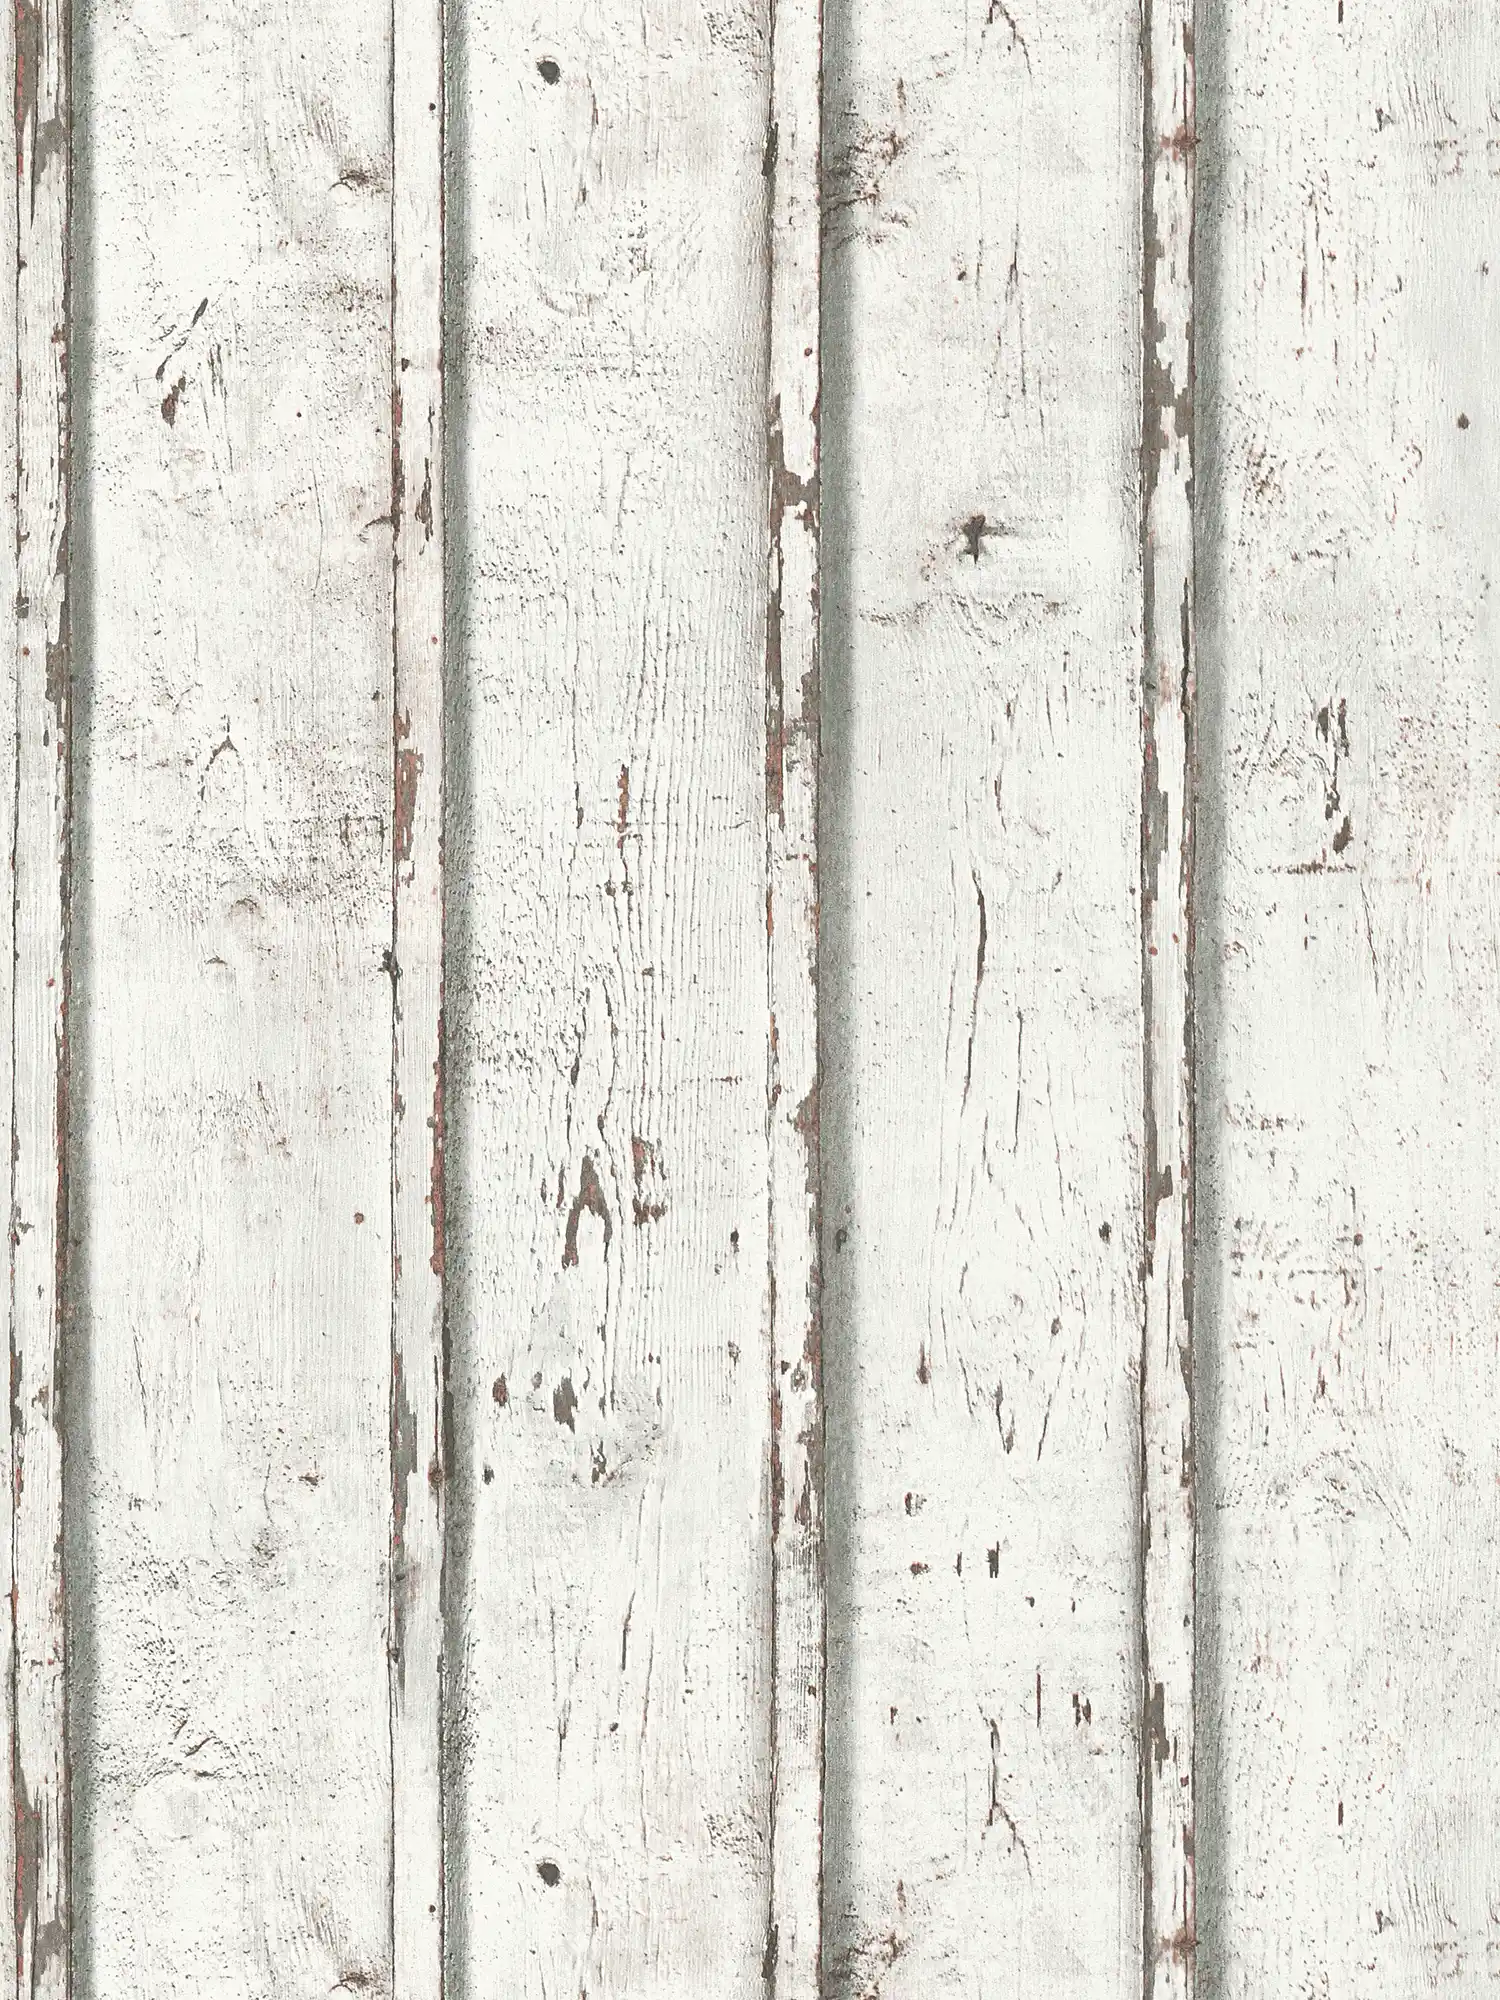 Houten behang in used look met verweerde houten planken - wit, crème, grijs
